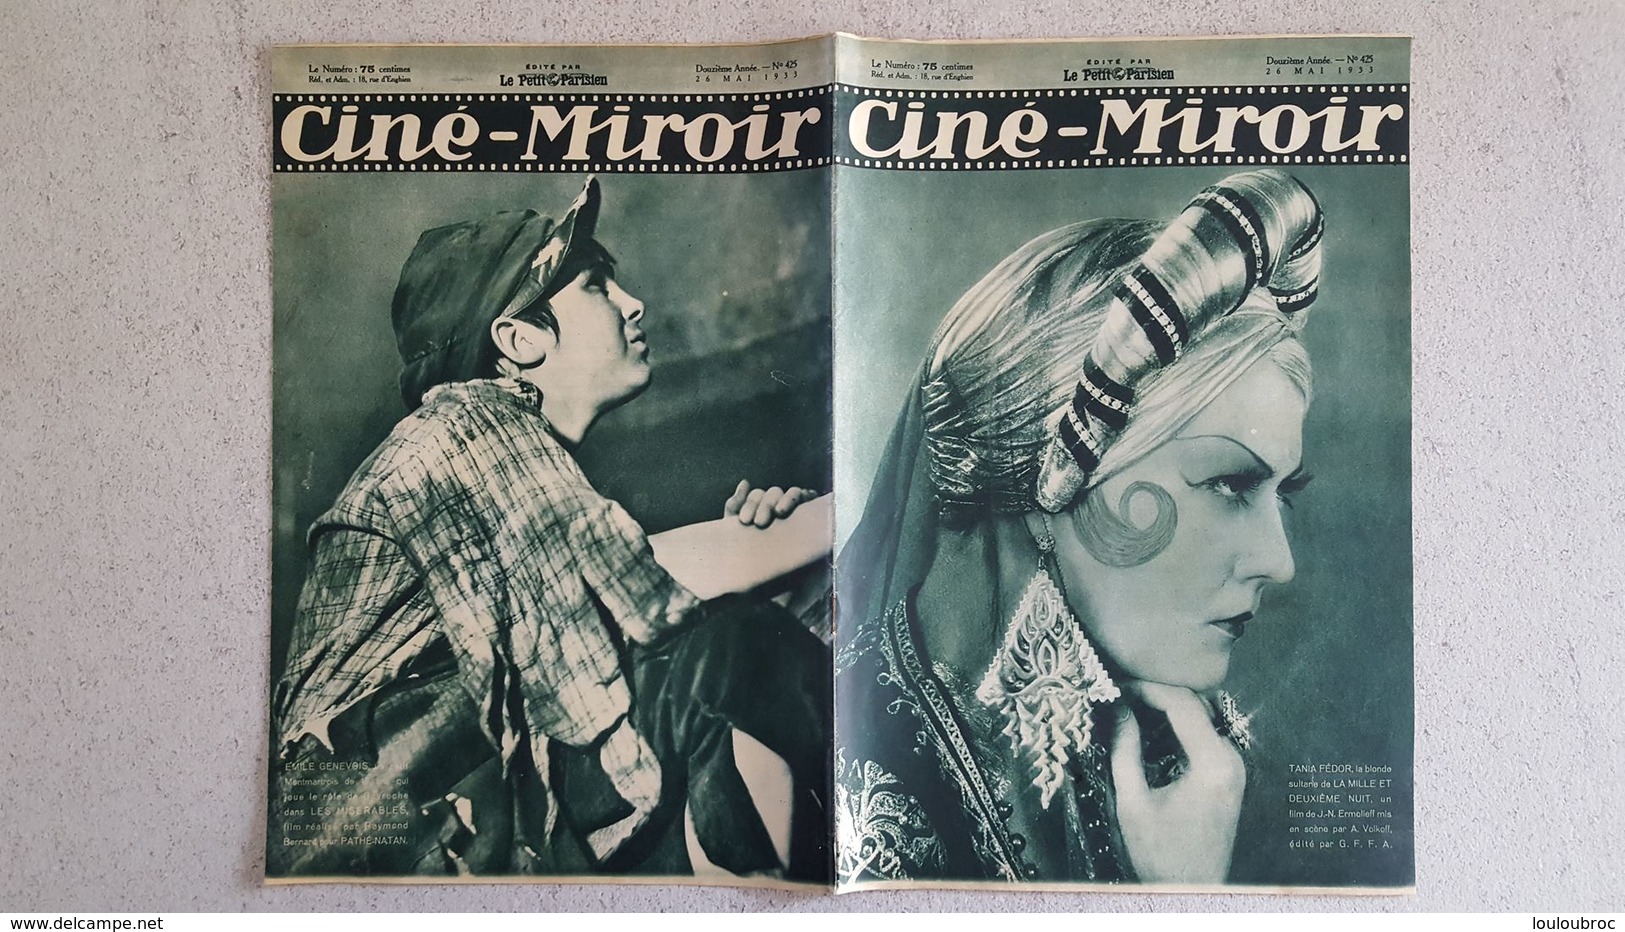 CINE MIROIR 05/1933 N°425 TANIA FEDOR - EMILE GENEVOIS - LE CRIME DU CHEMIN ROUGE - Cinéma/Télévision